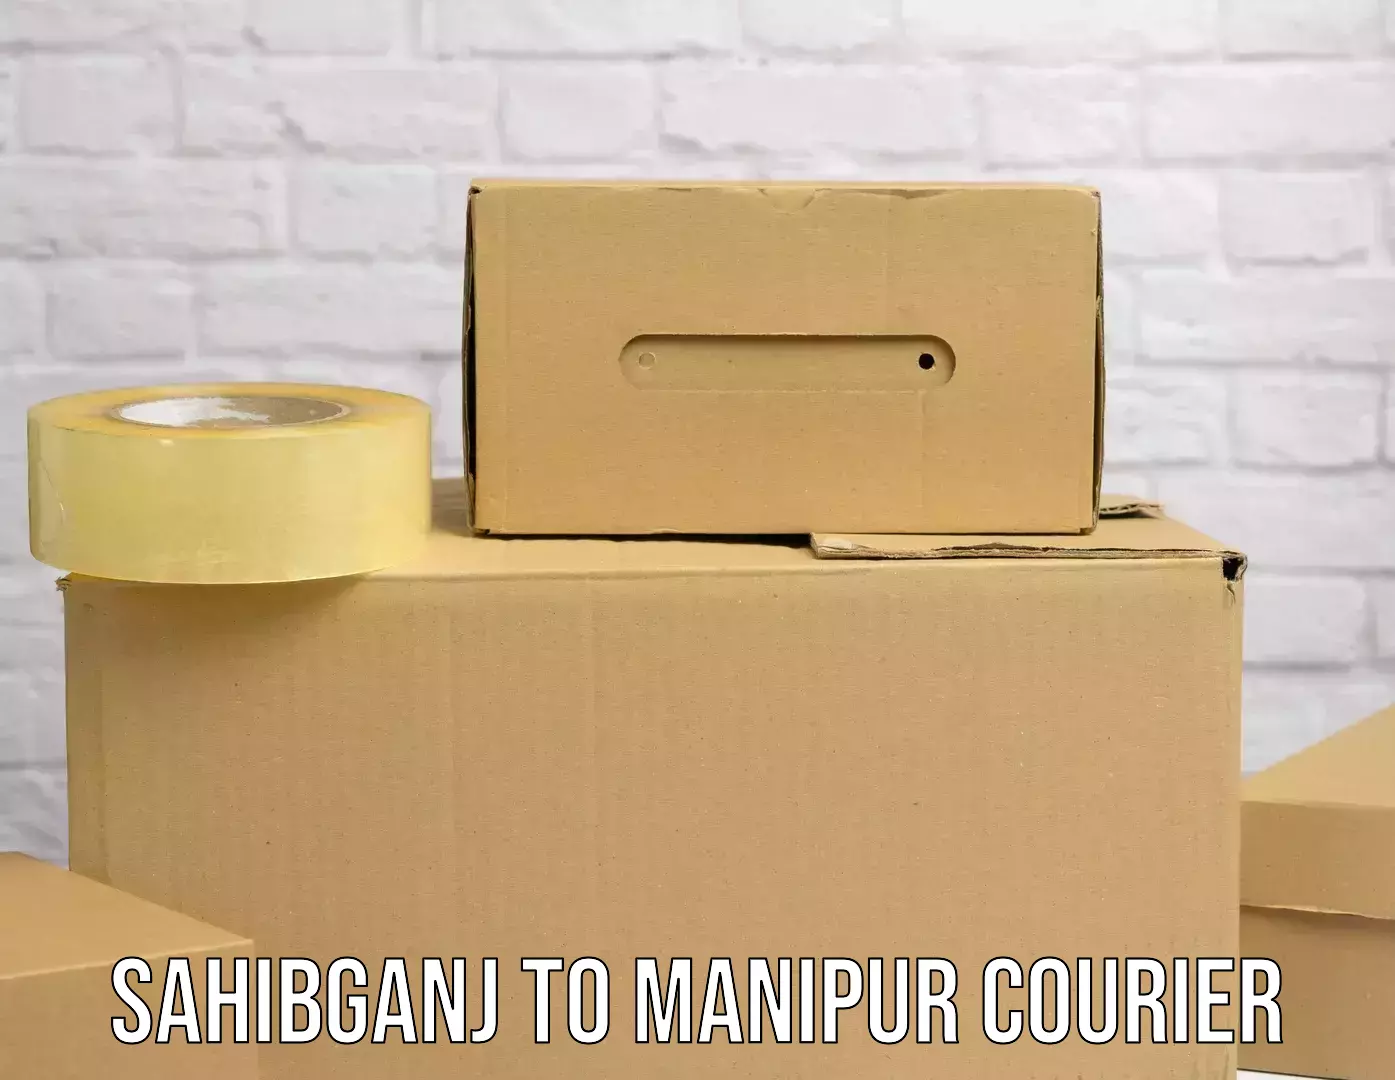 Return courier service Sahibganj to Churachandpur